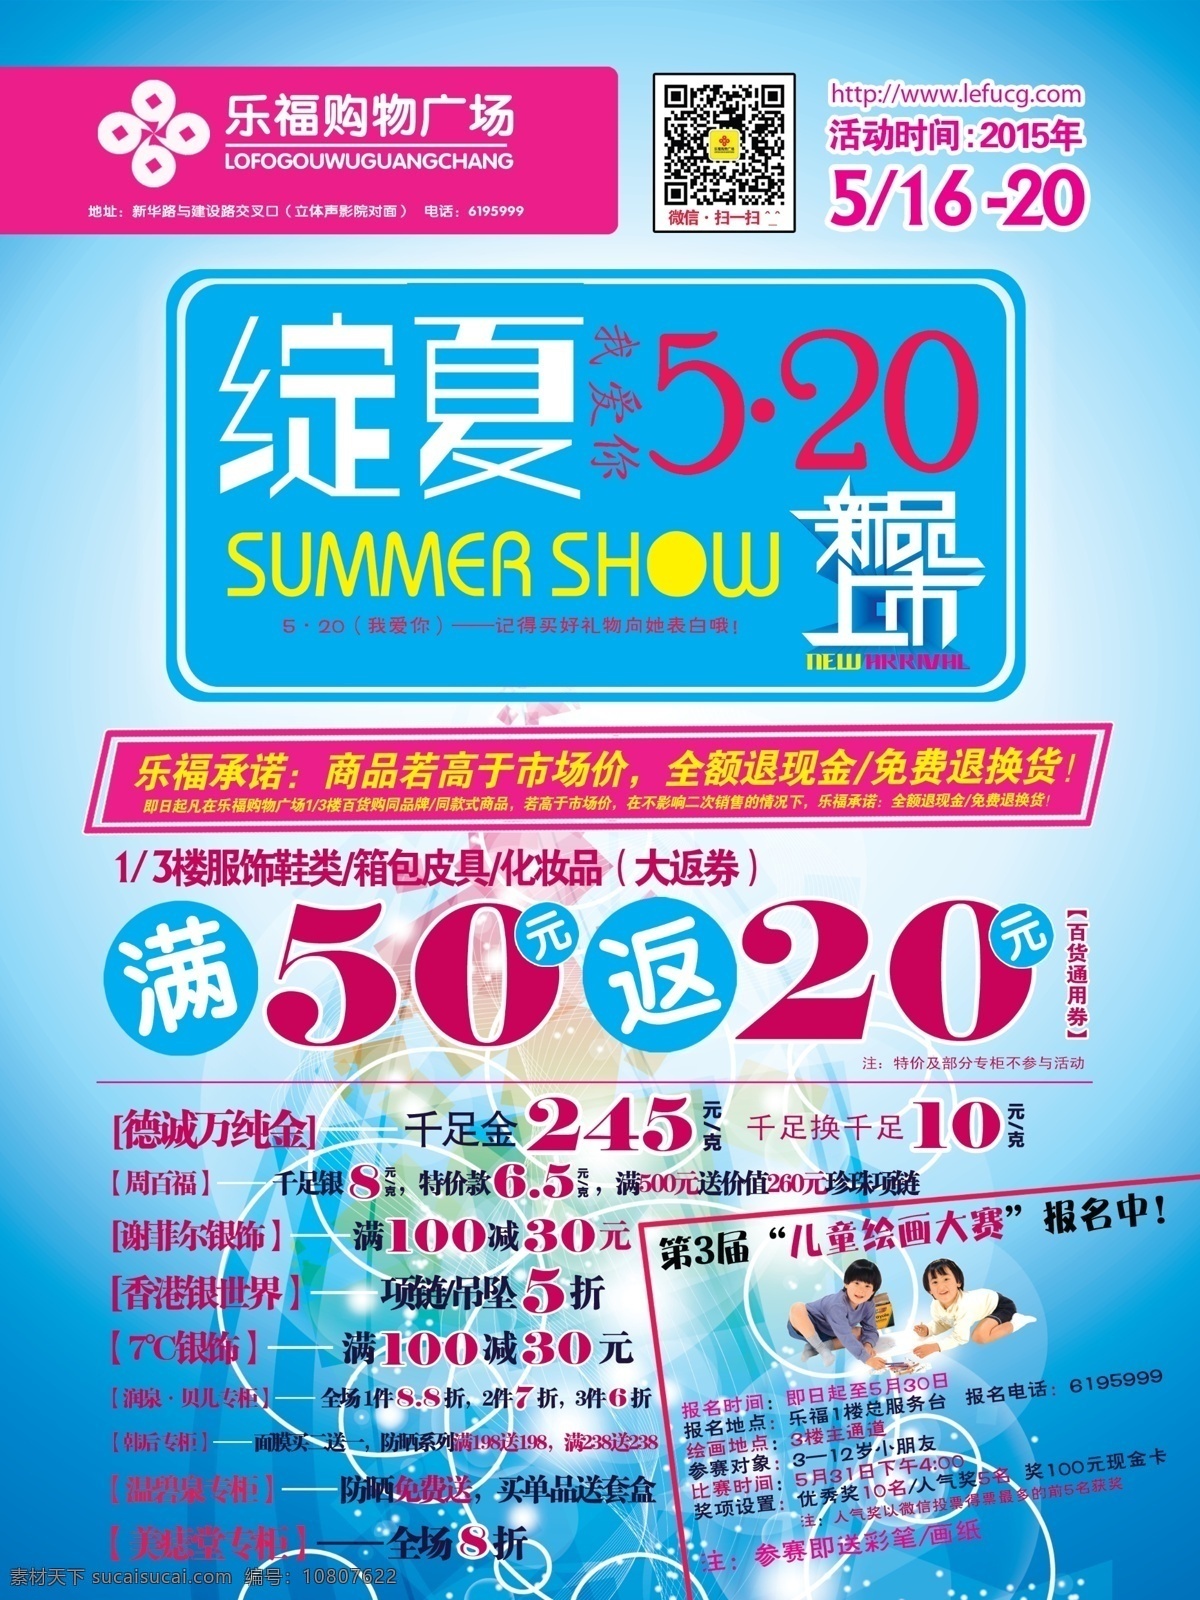 夏季广告 夏季海报 夏季dm 夏季新品上市 超市夏季dm 绽放夏季 520 夏季宣传单 dm宣传单